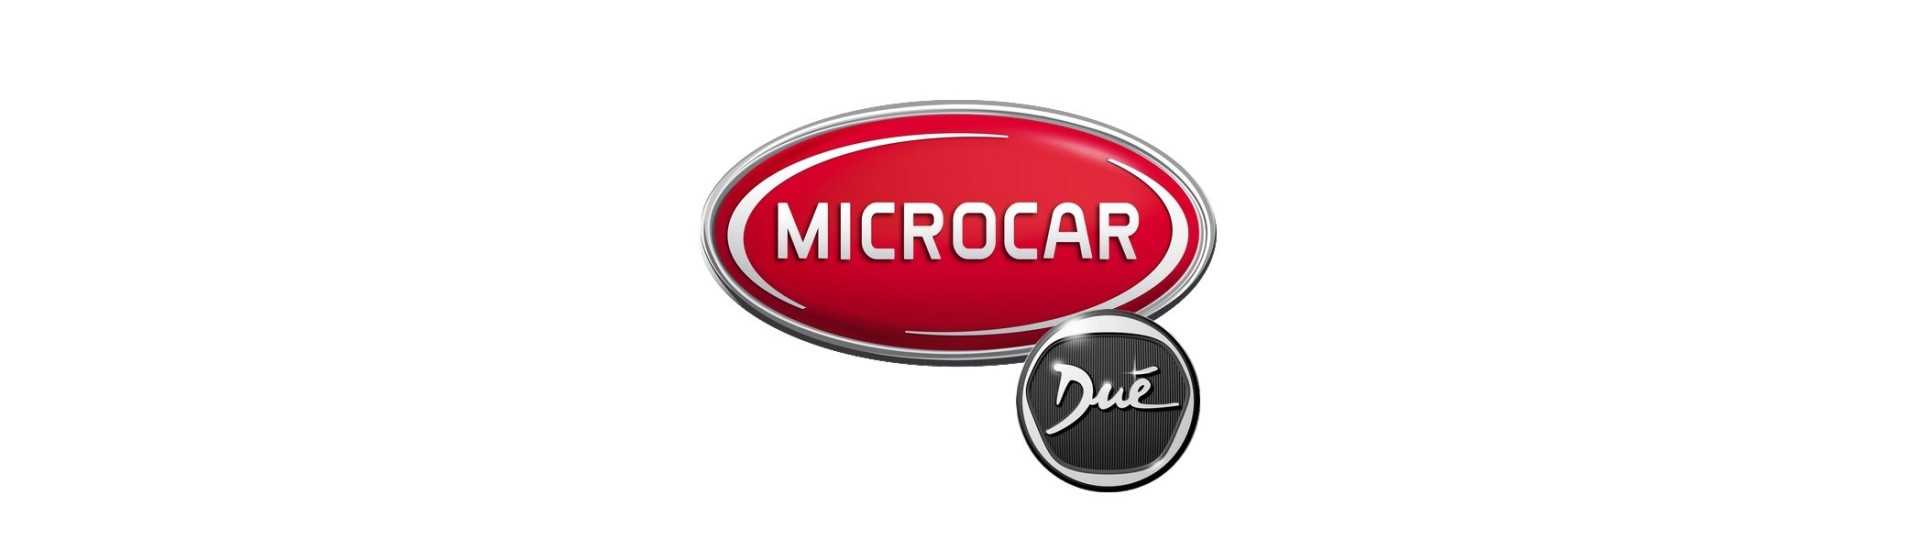 Sähkönvalmistaja parhaalla hinnalla ilman lupaa Microcar Dué